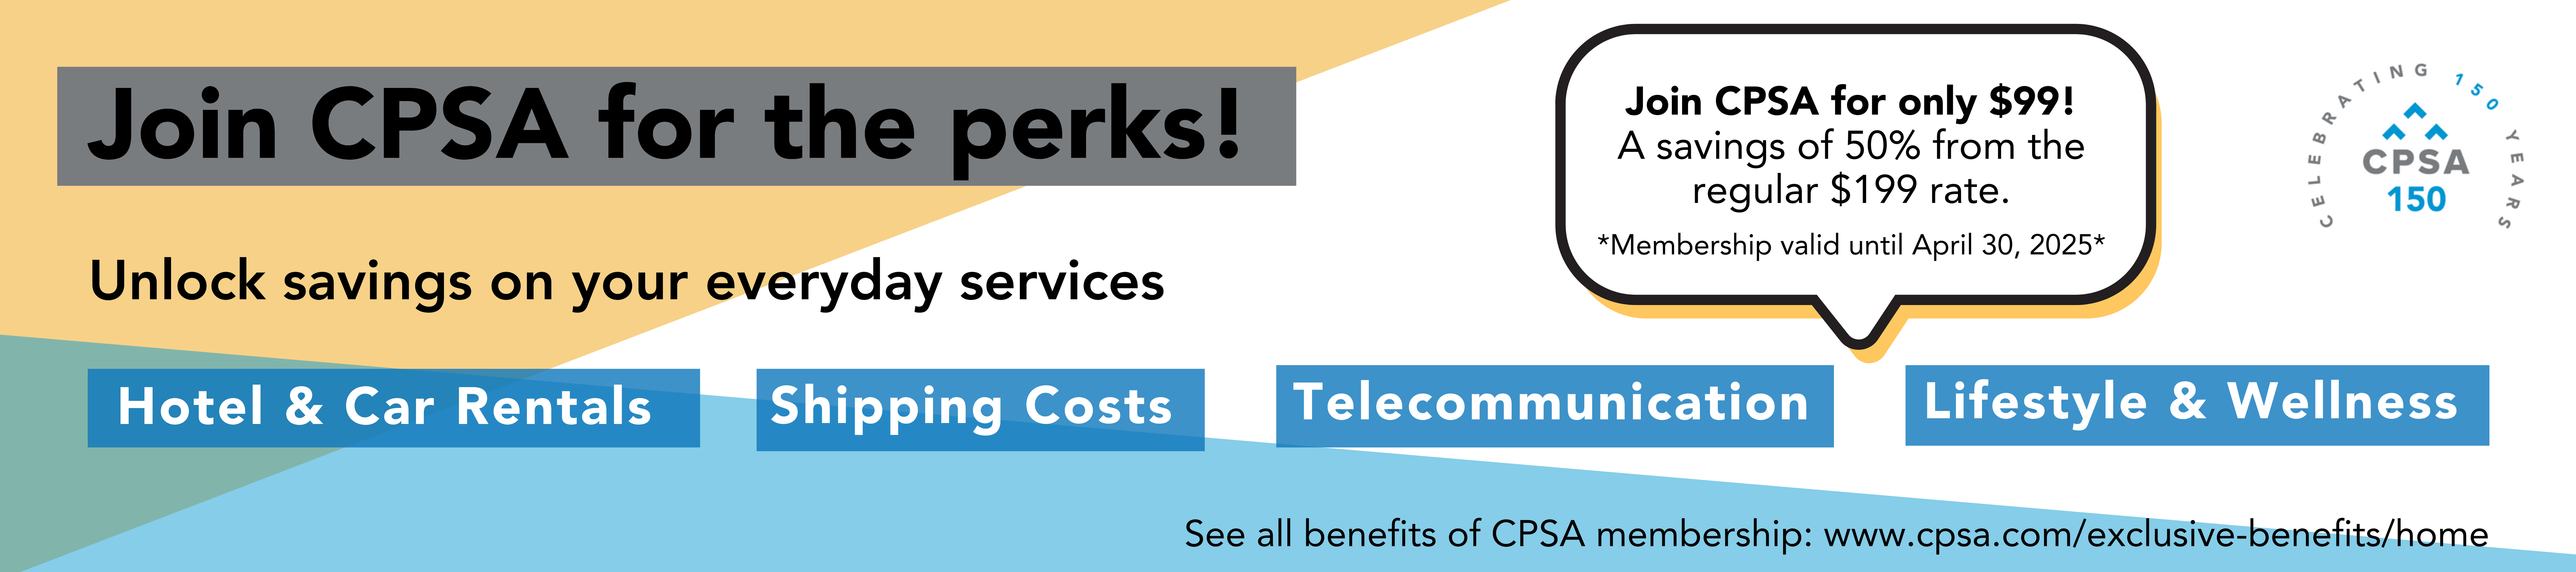 CPSA Member Benefits